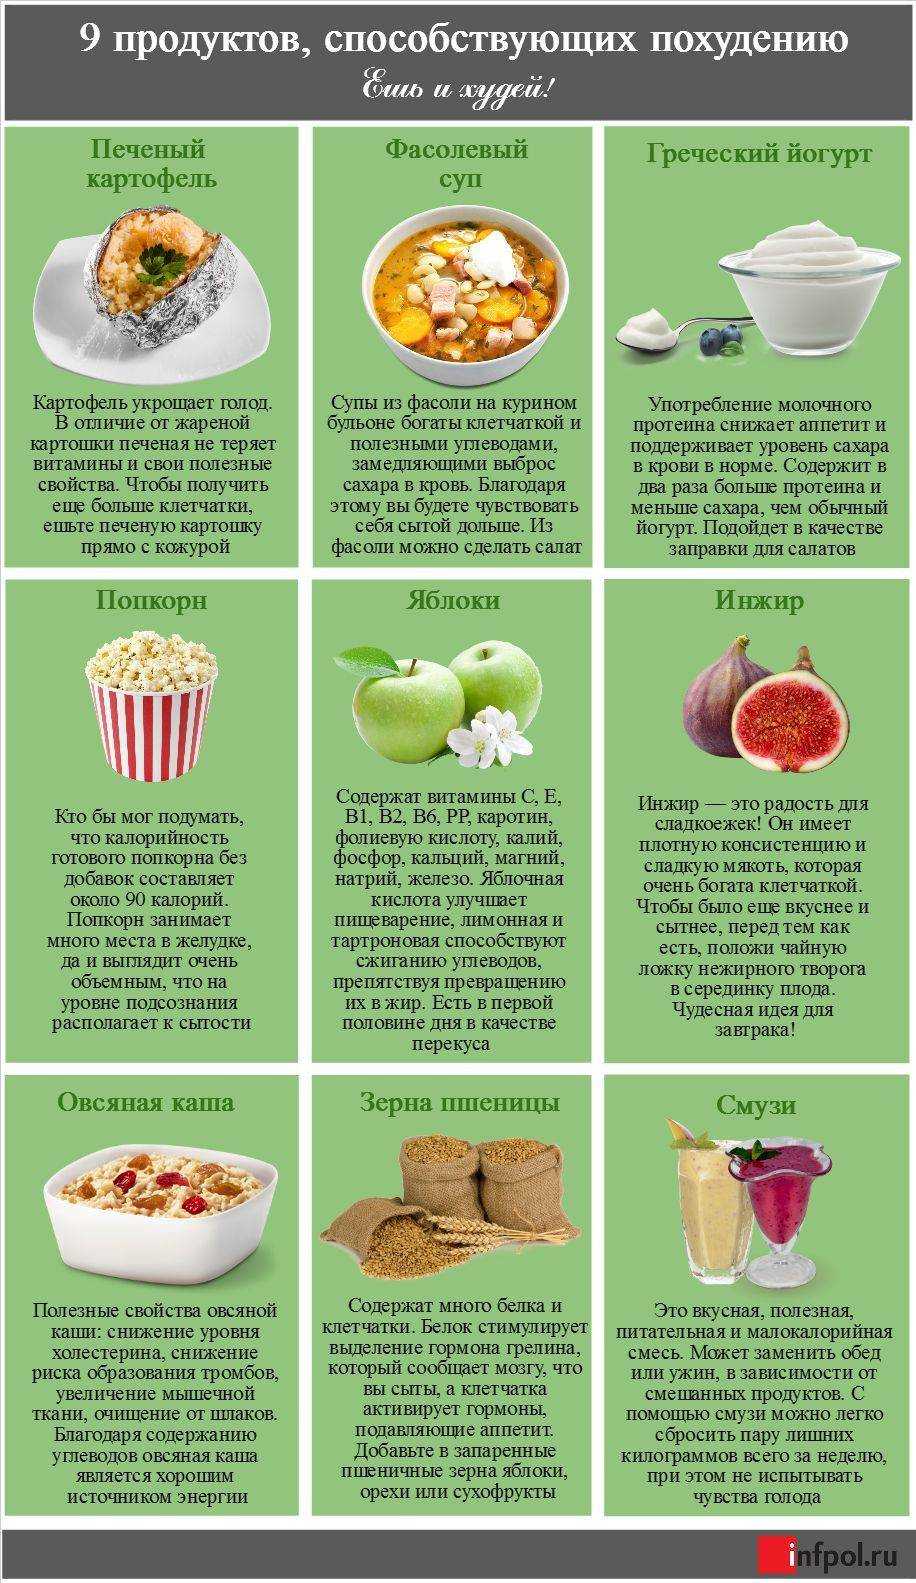 Что есть, чтобы похудеть - список продуктов и как правильно питаться